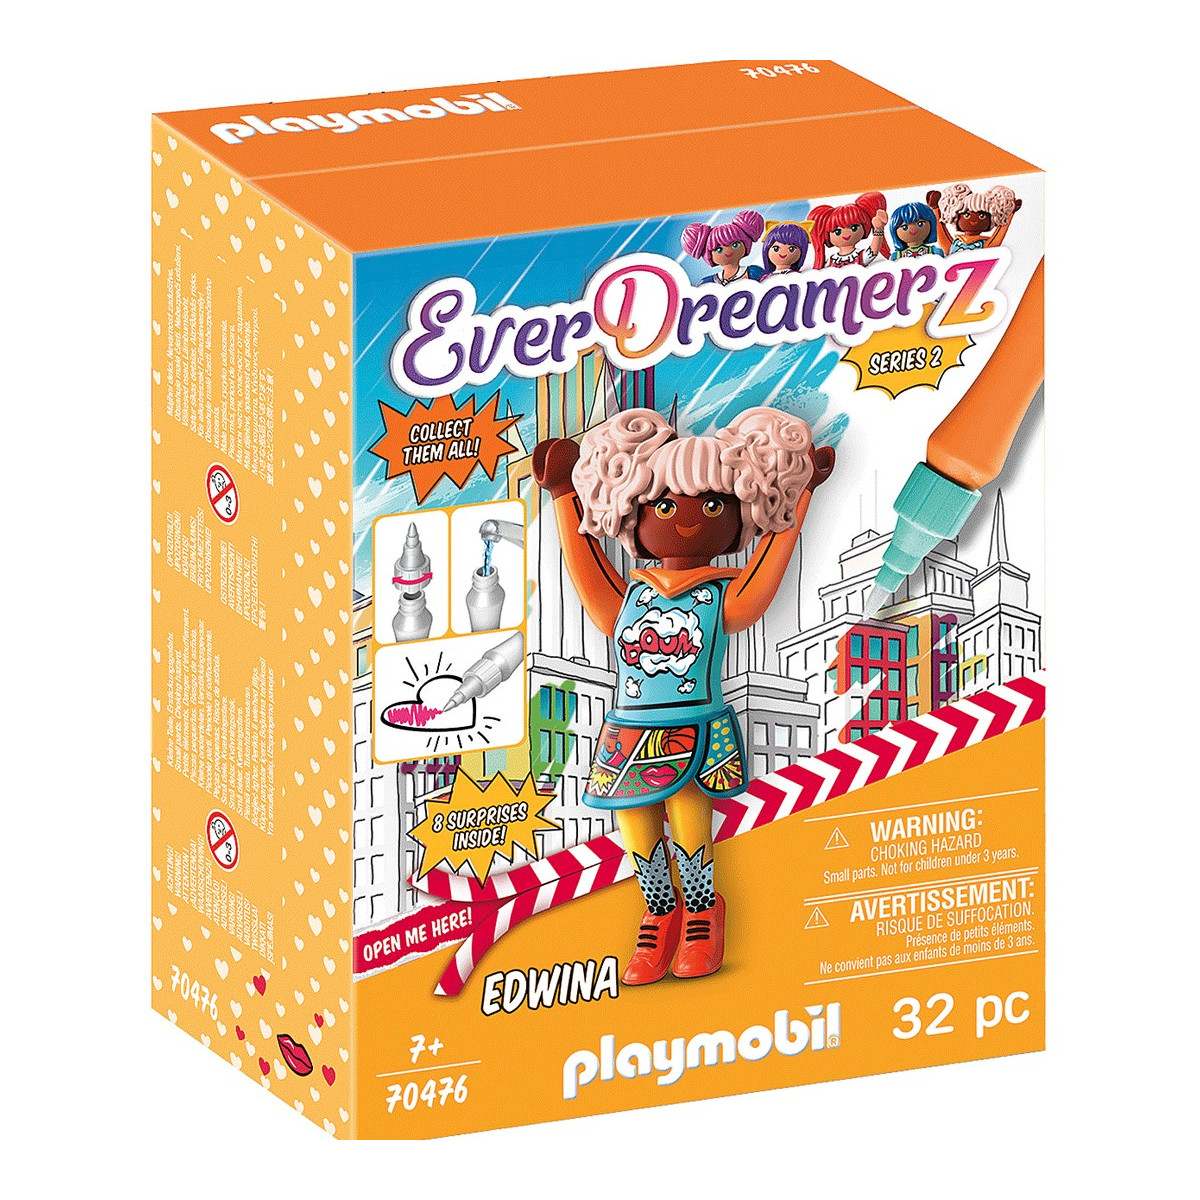 Everdreamerz playmobil edwina in scatola con accessori